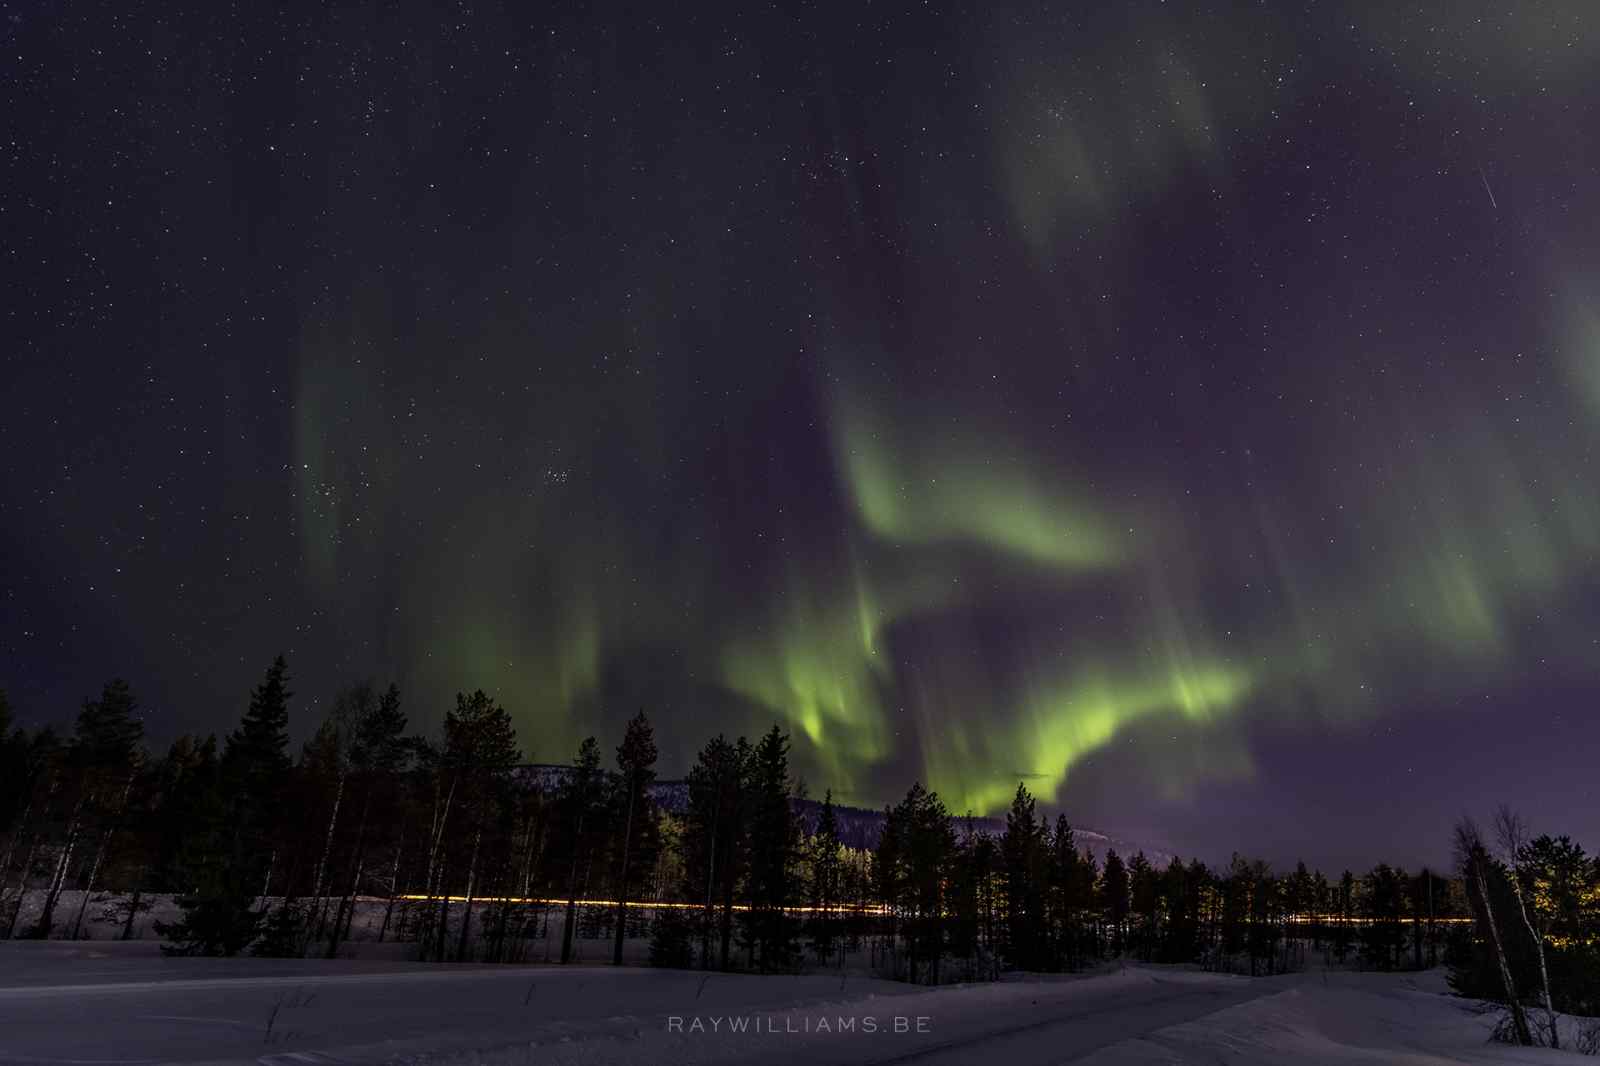 Lapland Aurora